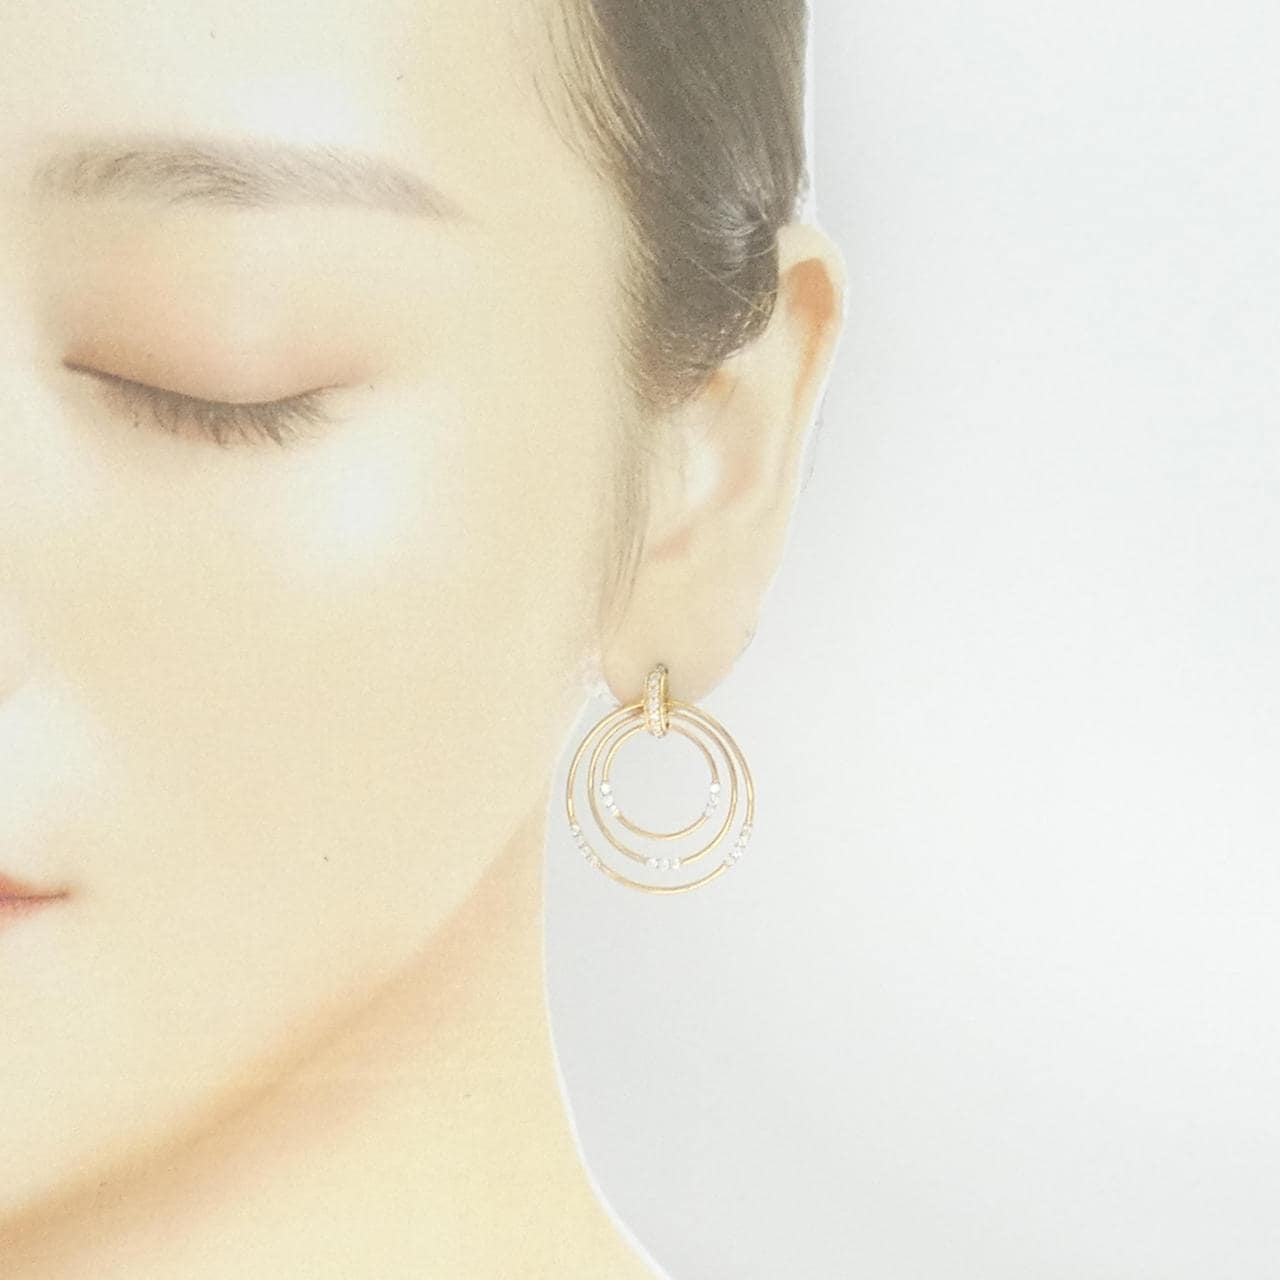 [BRAND NEW] K18YG Diamond earrings 0.62CT